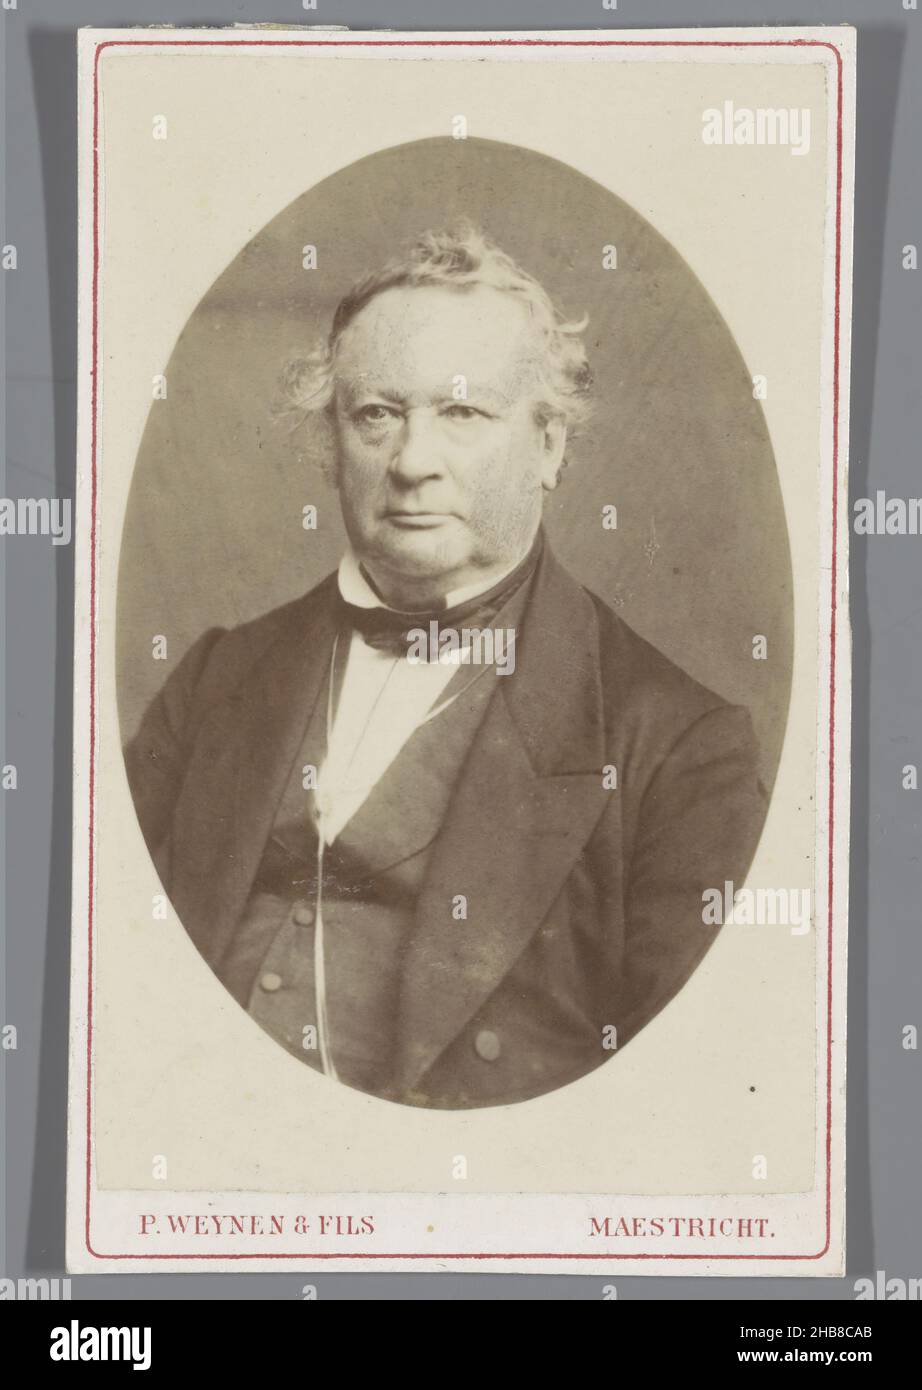 Porträt eines unbekannten Mannes, Pierre Weynen & Fils (auf Objekt erwähnt), Maastricht, 1854 - 1865, Papier, Karton, Albumin-Print, Höhe 100 mm × Breite 62 mm Stockfoto